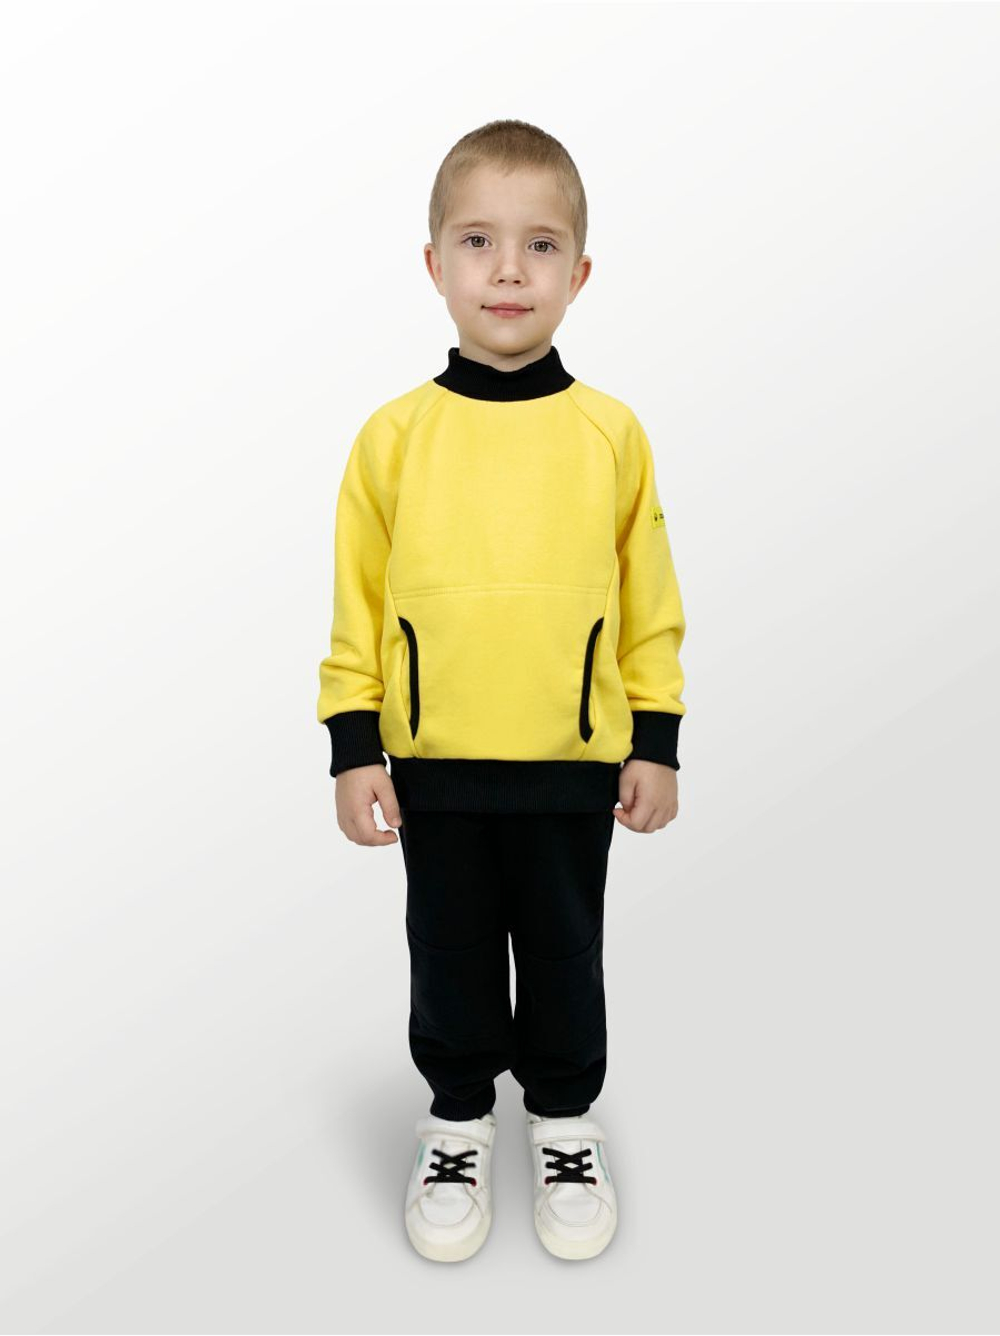 Худи для детей, модель №2, рост 92 см, желтый